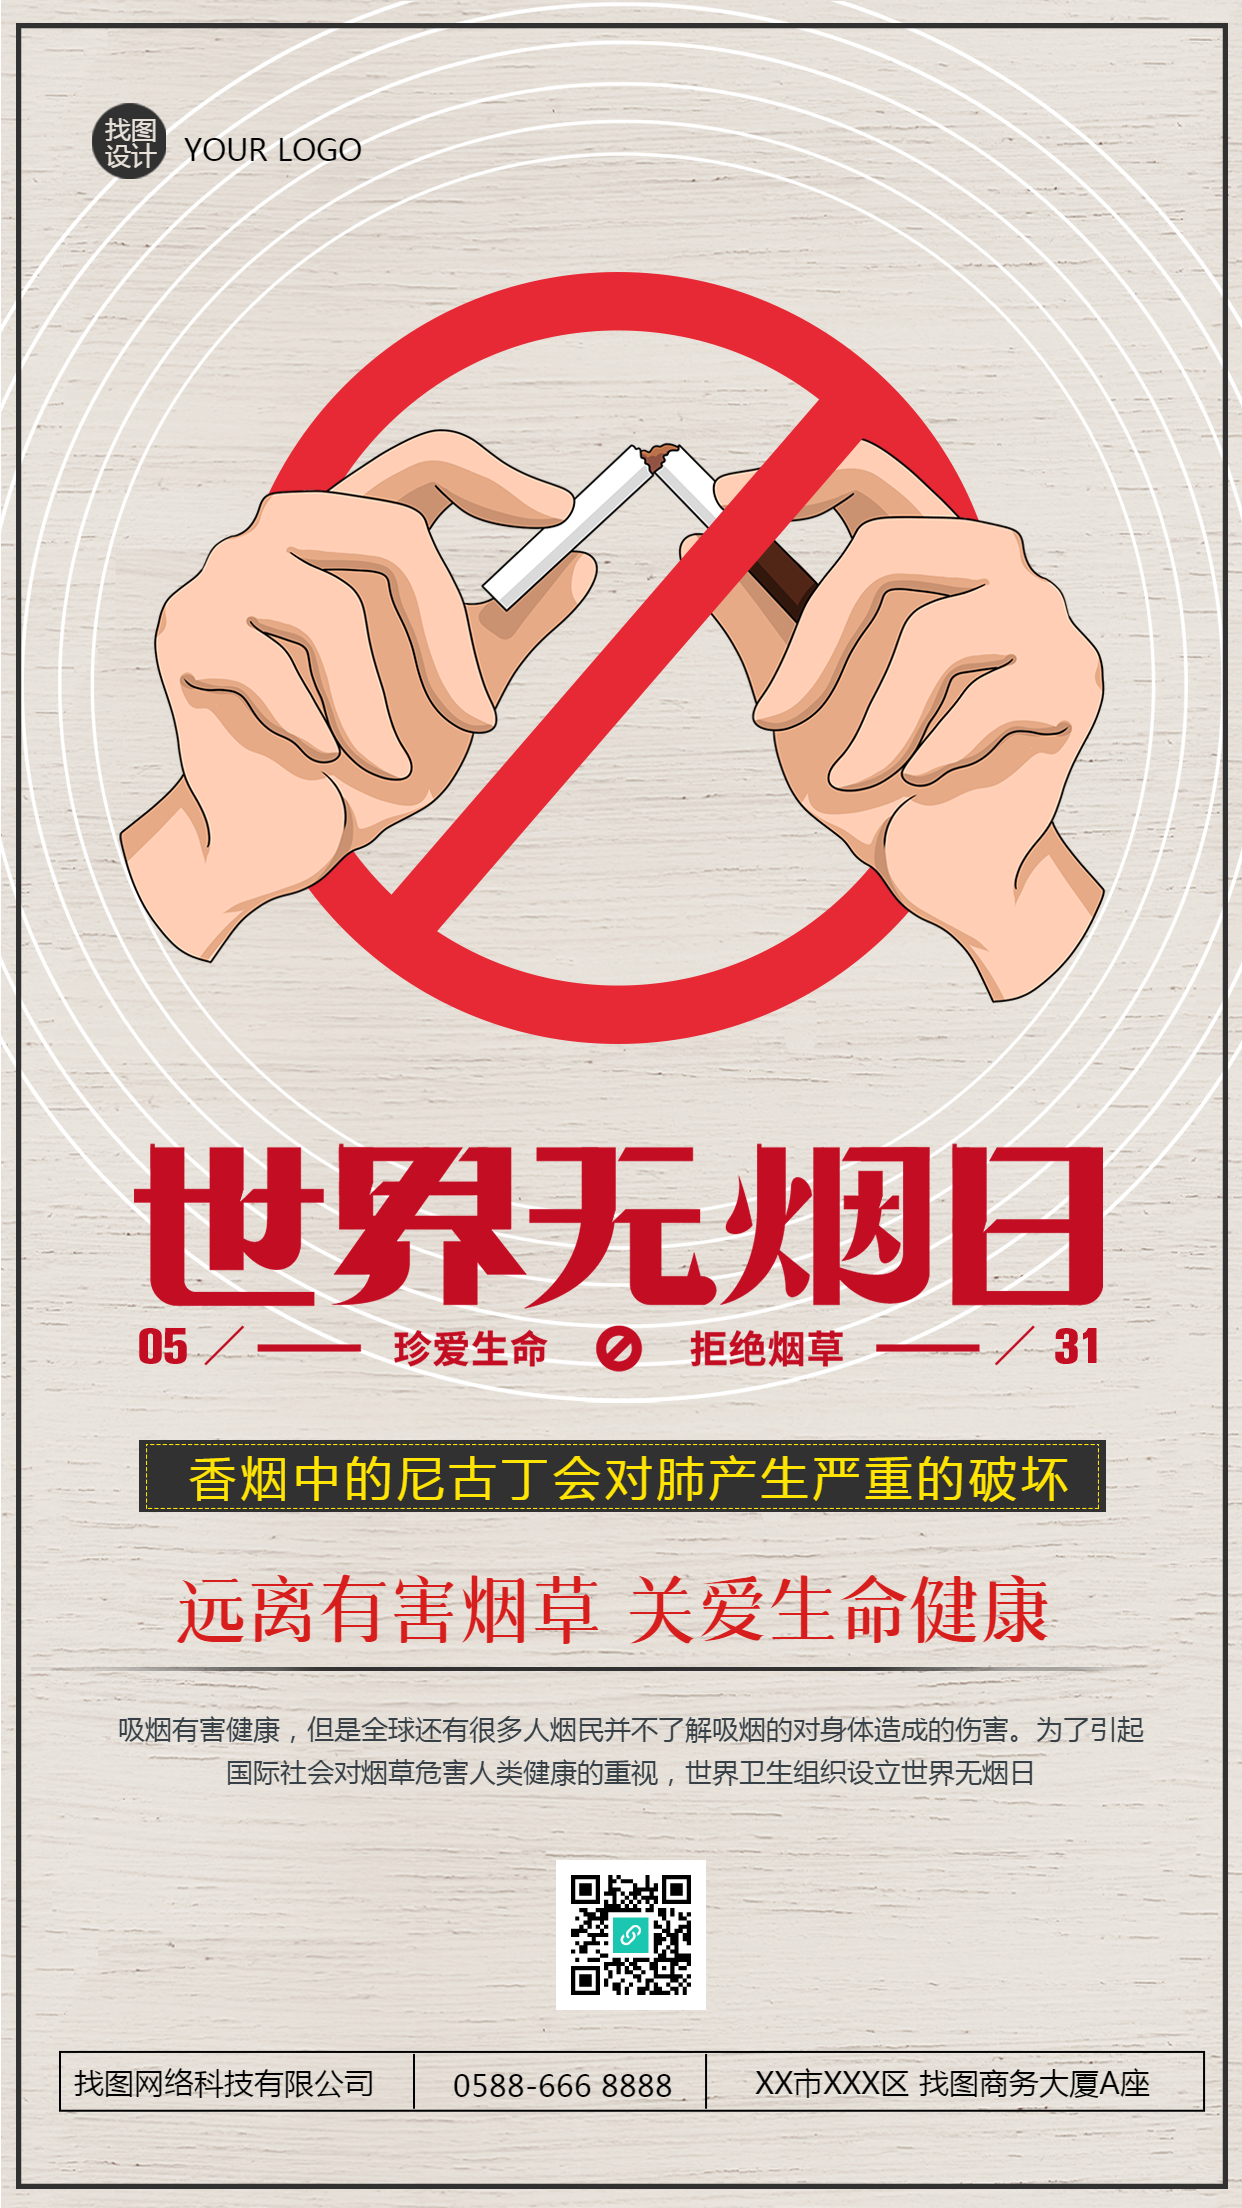 远离有害烟草无烟日宣传手机海报